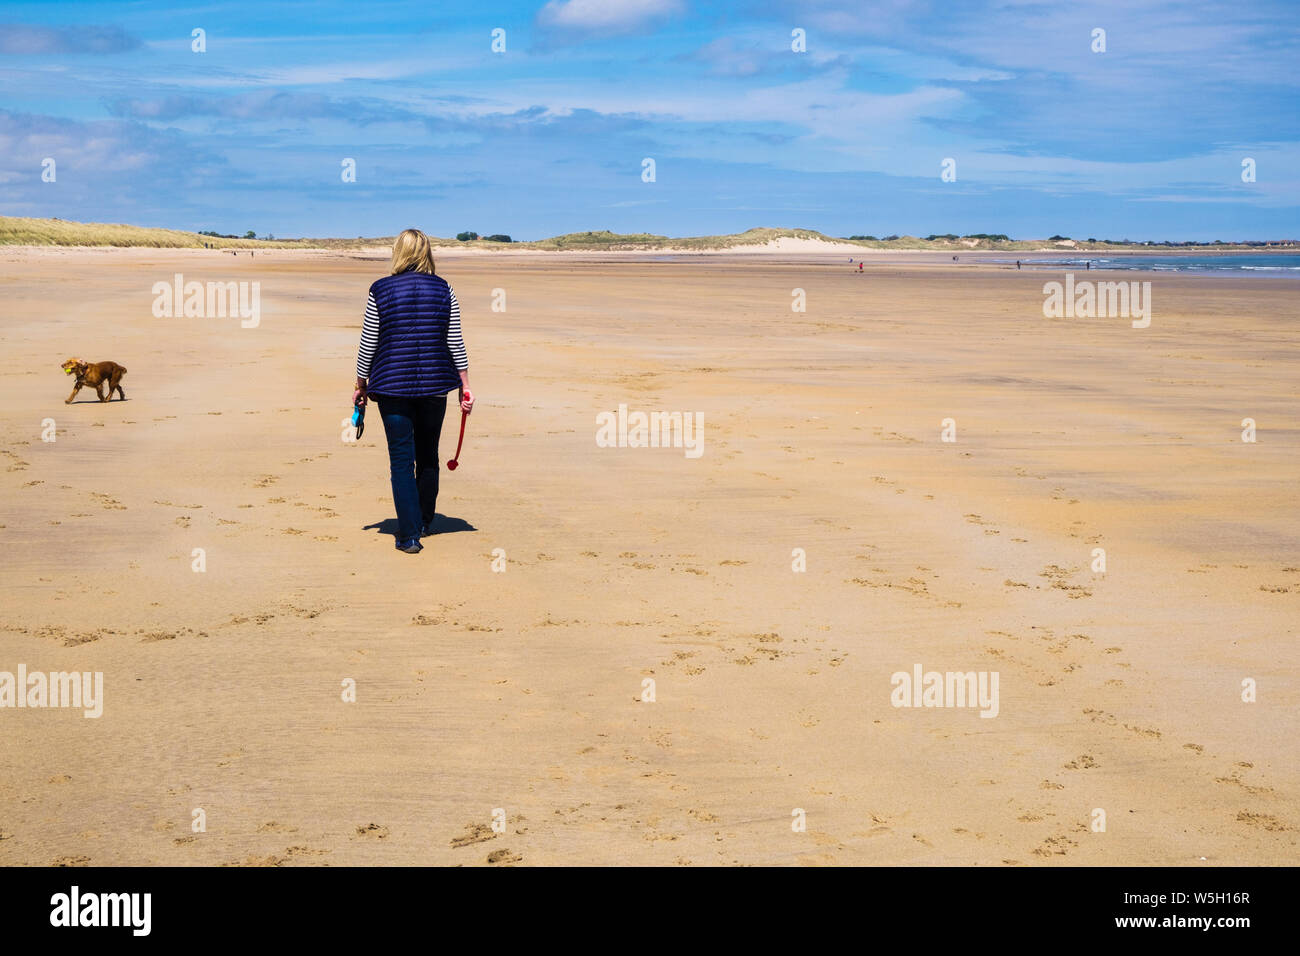 Femme marche l'exercice d'un chien Cocker sur une paisible plage de sable sur la côte nord-est. Beadnell, Northumberland, England, UK, Grande-Bretagne Banque D'Images